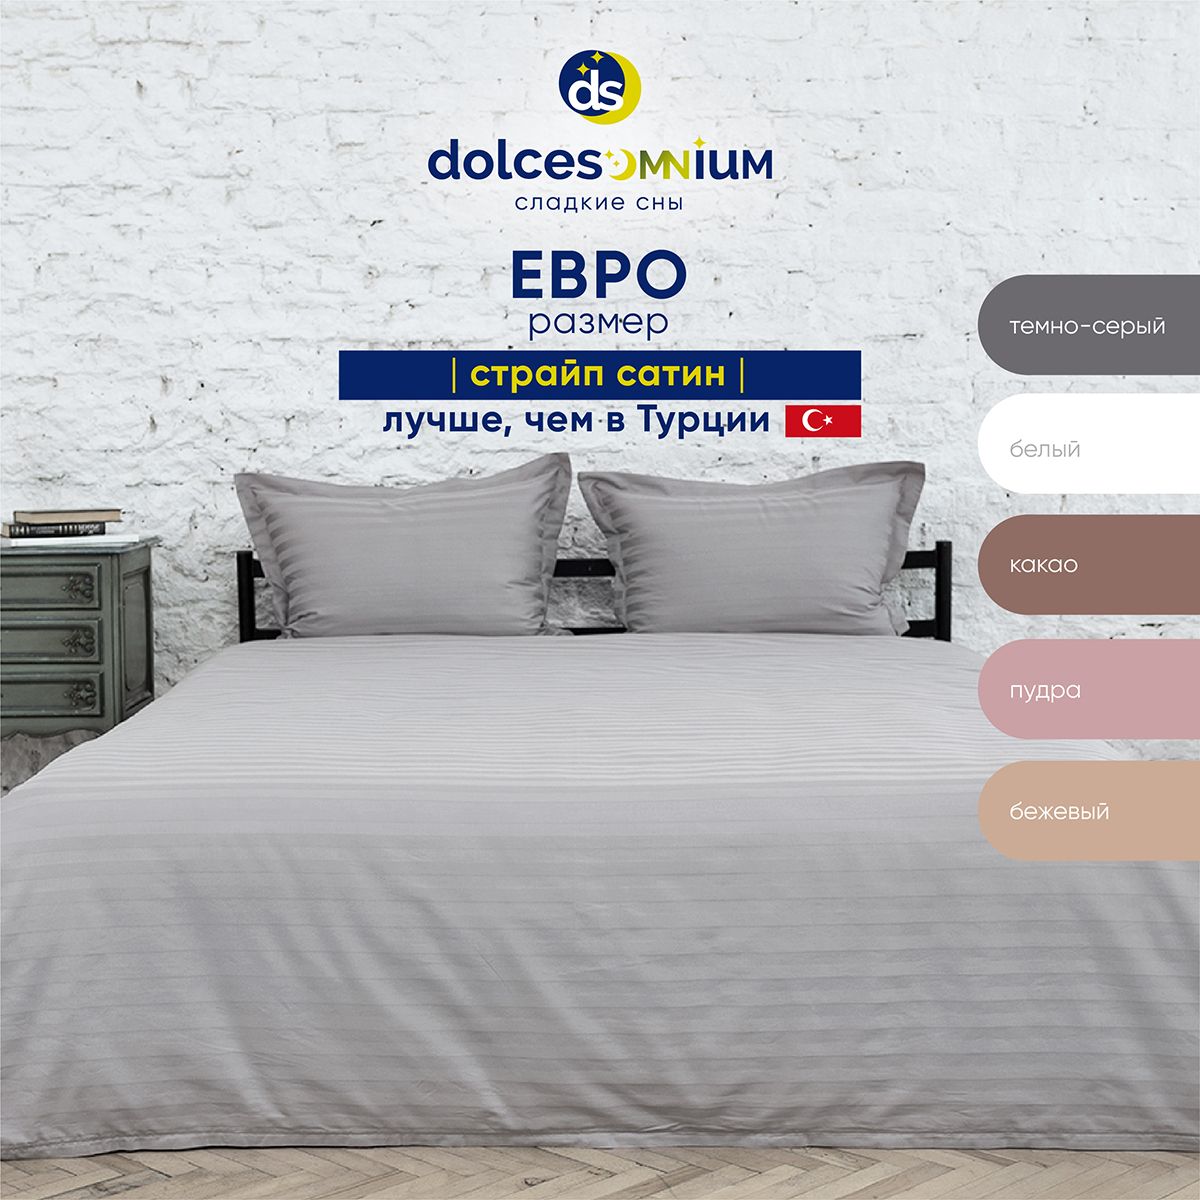 Комплект постельного белья DolceSomnium евро 817/0031668\3422